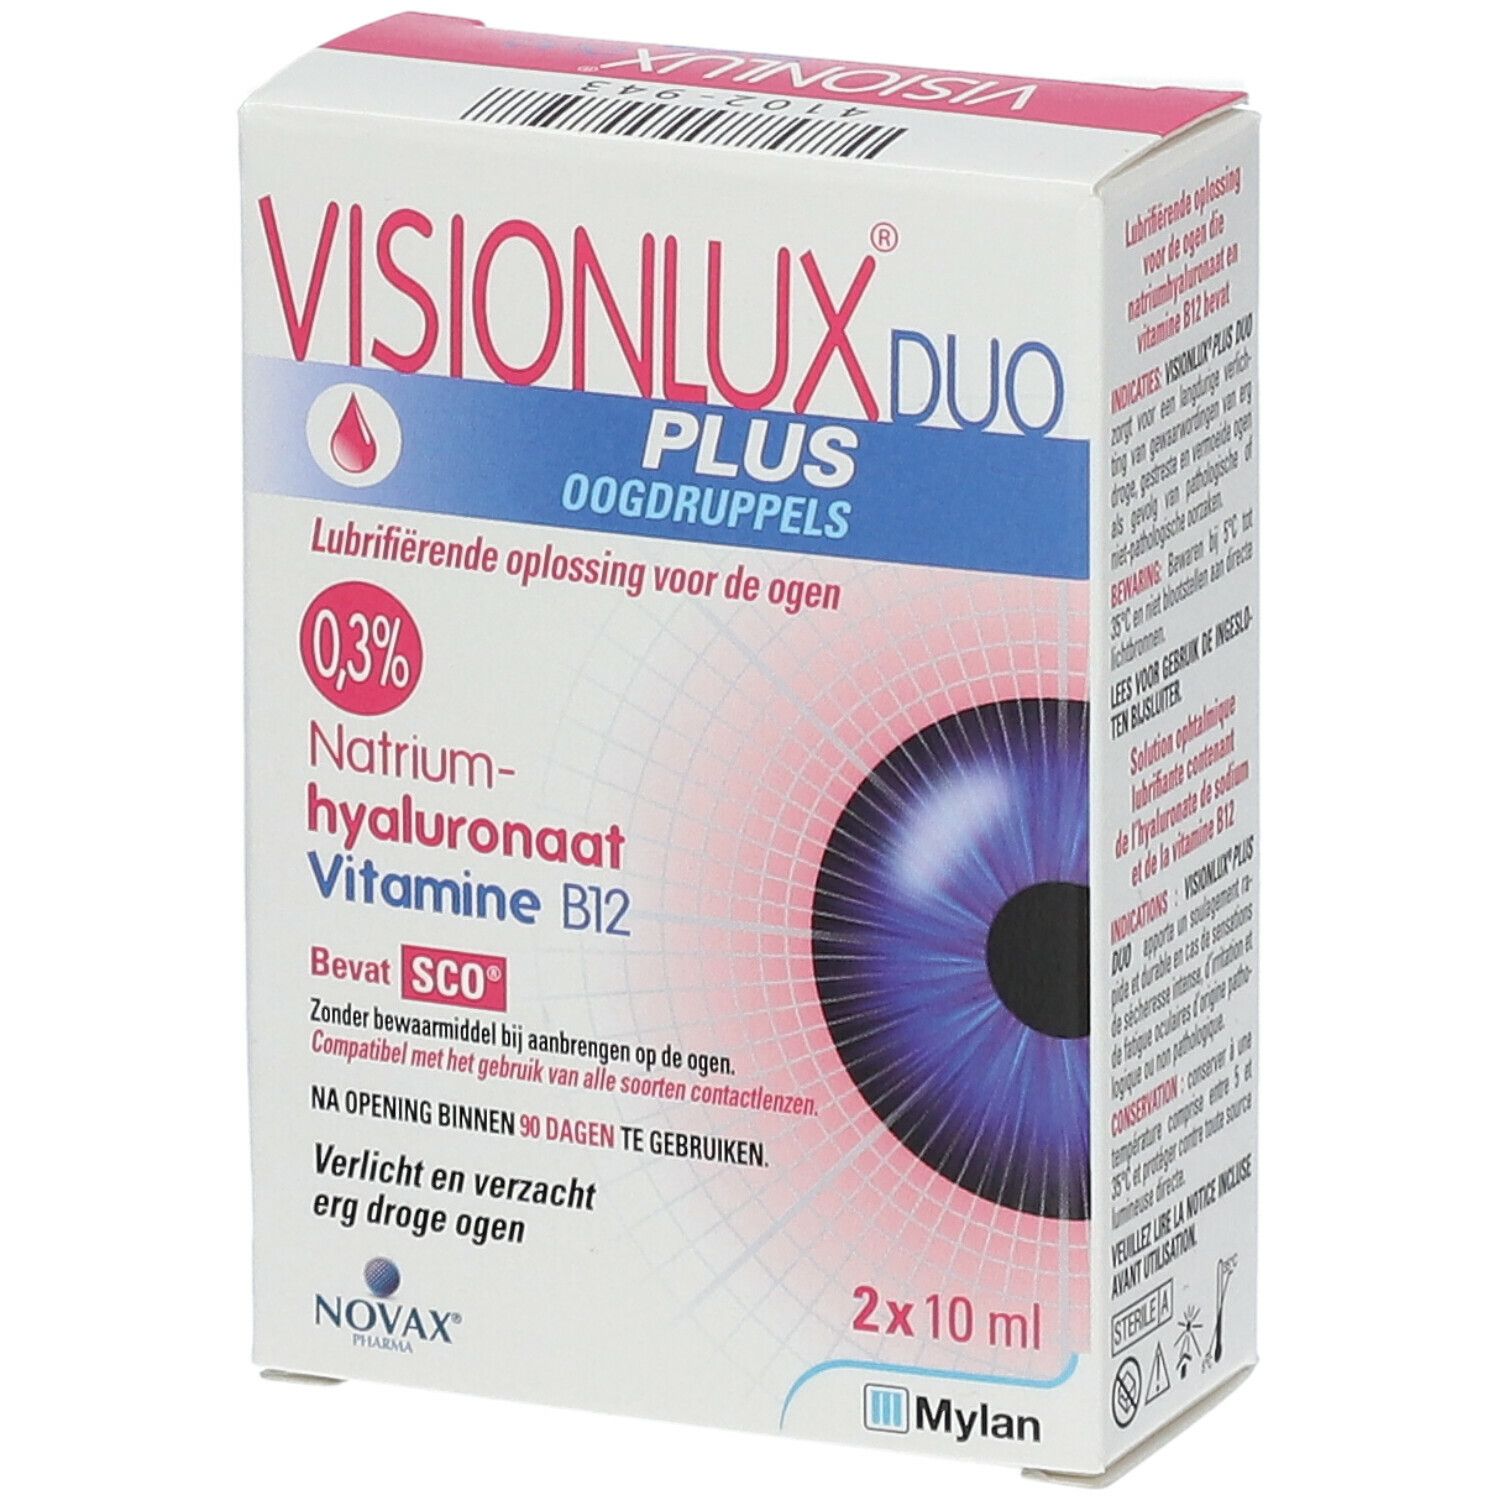 Visionlux Plus DUO